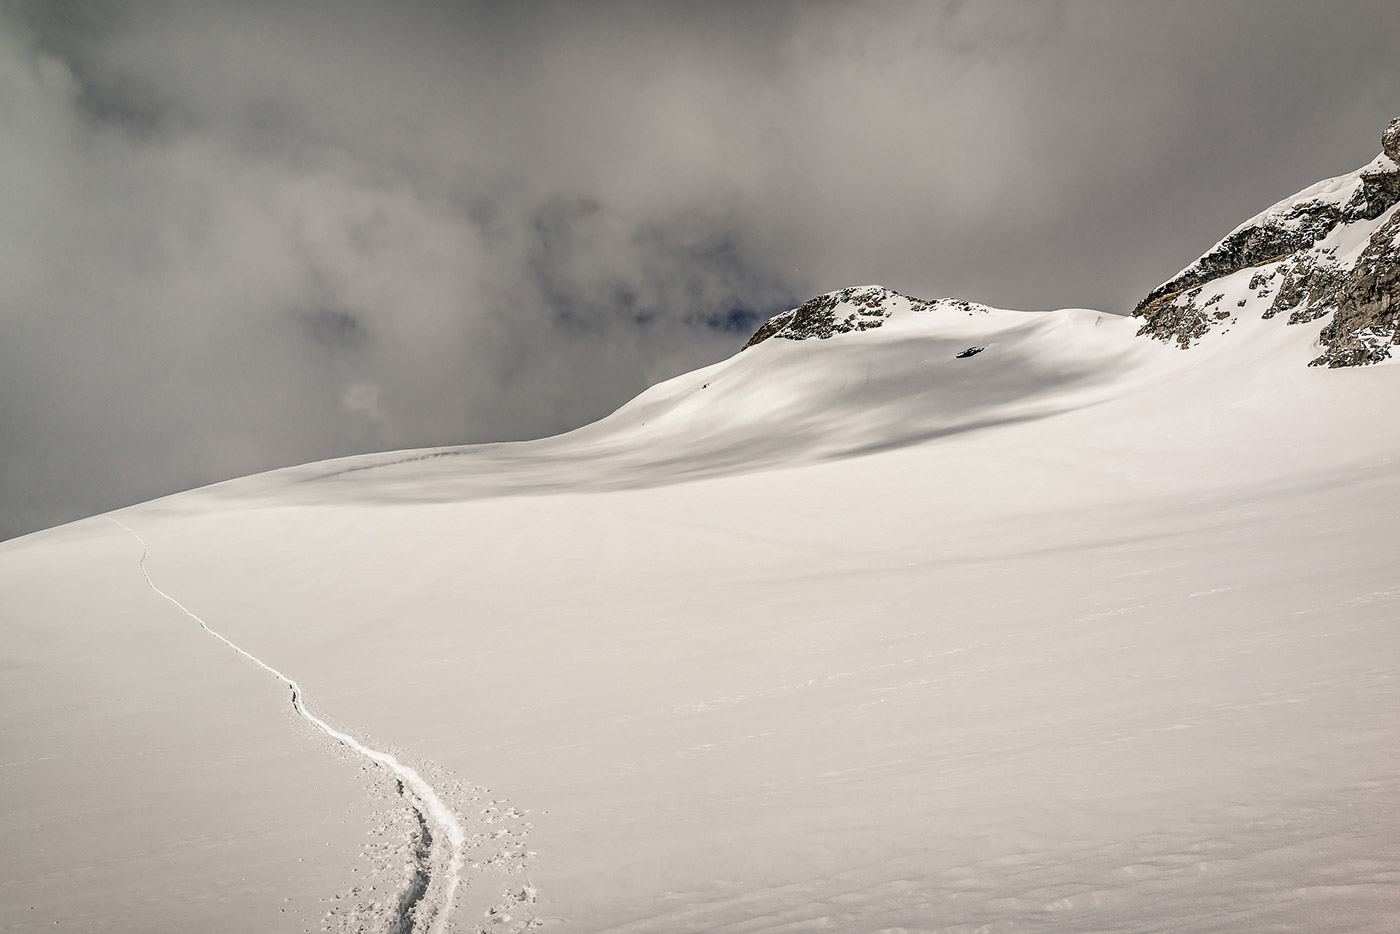 Adobe Portfolio mountains Switzerland snow Ski skitouring loetschental winter alps Schweiz